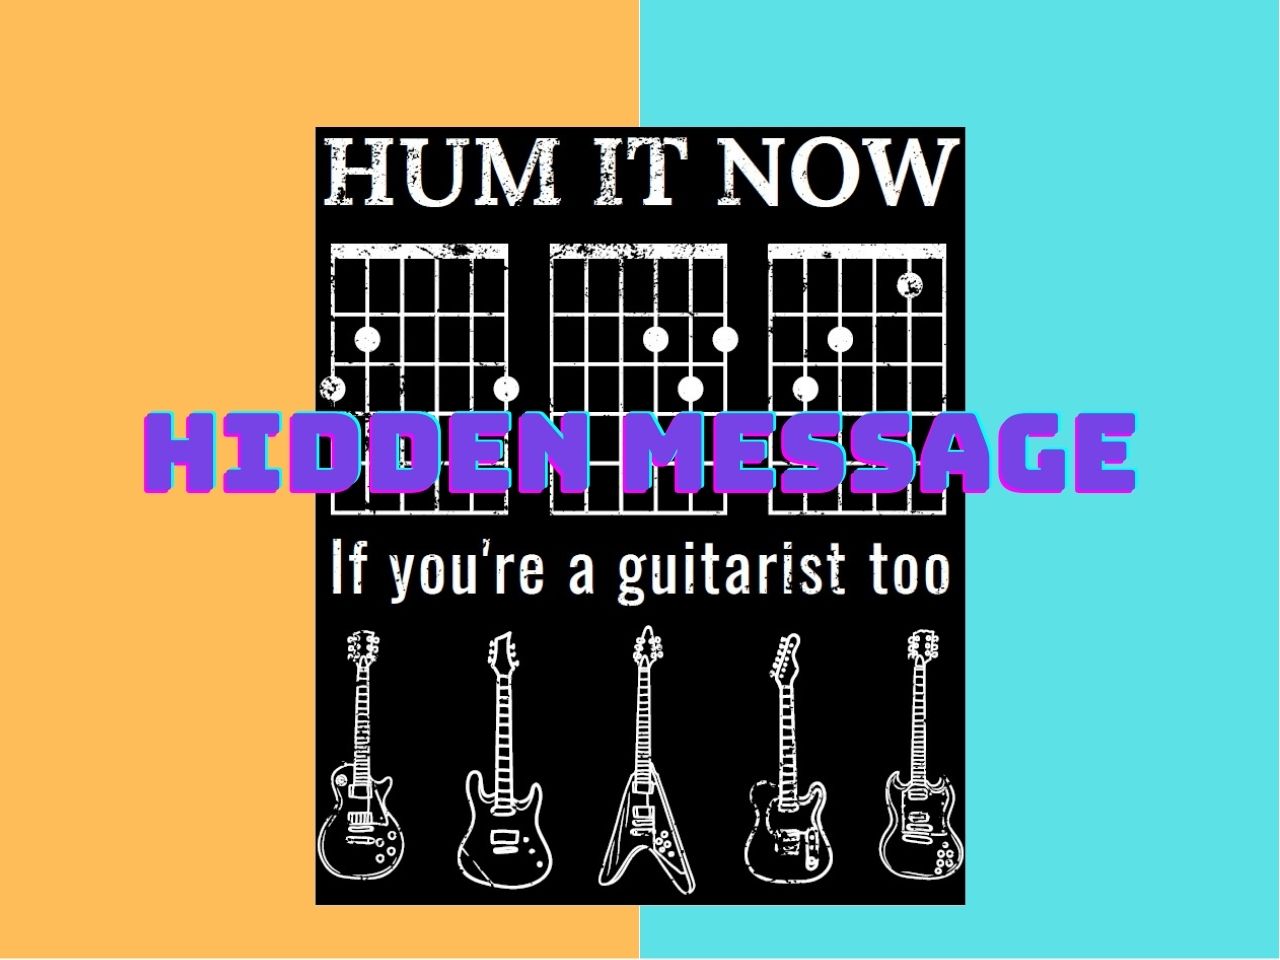 Interactive T-shirt for guitarists hidden message